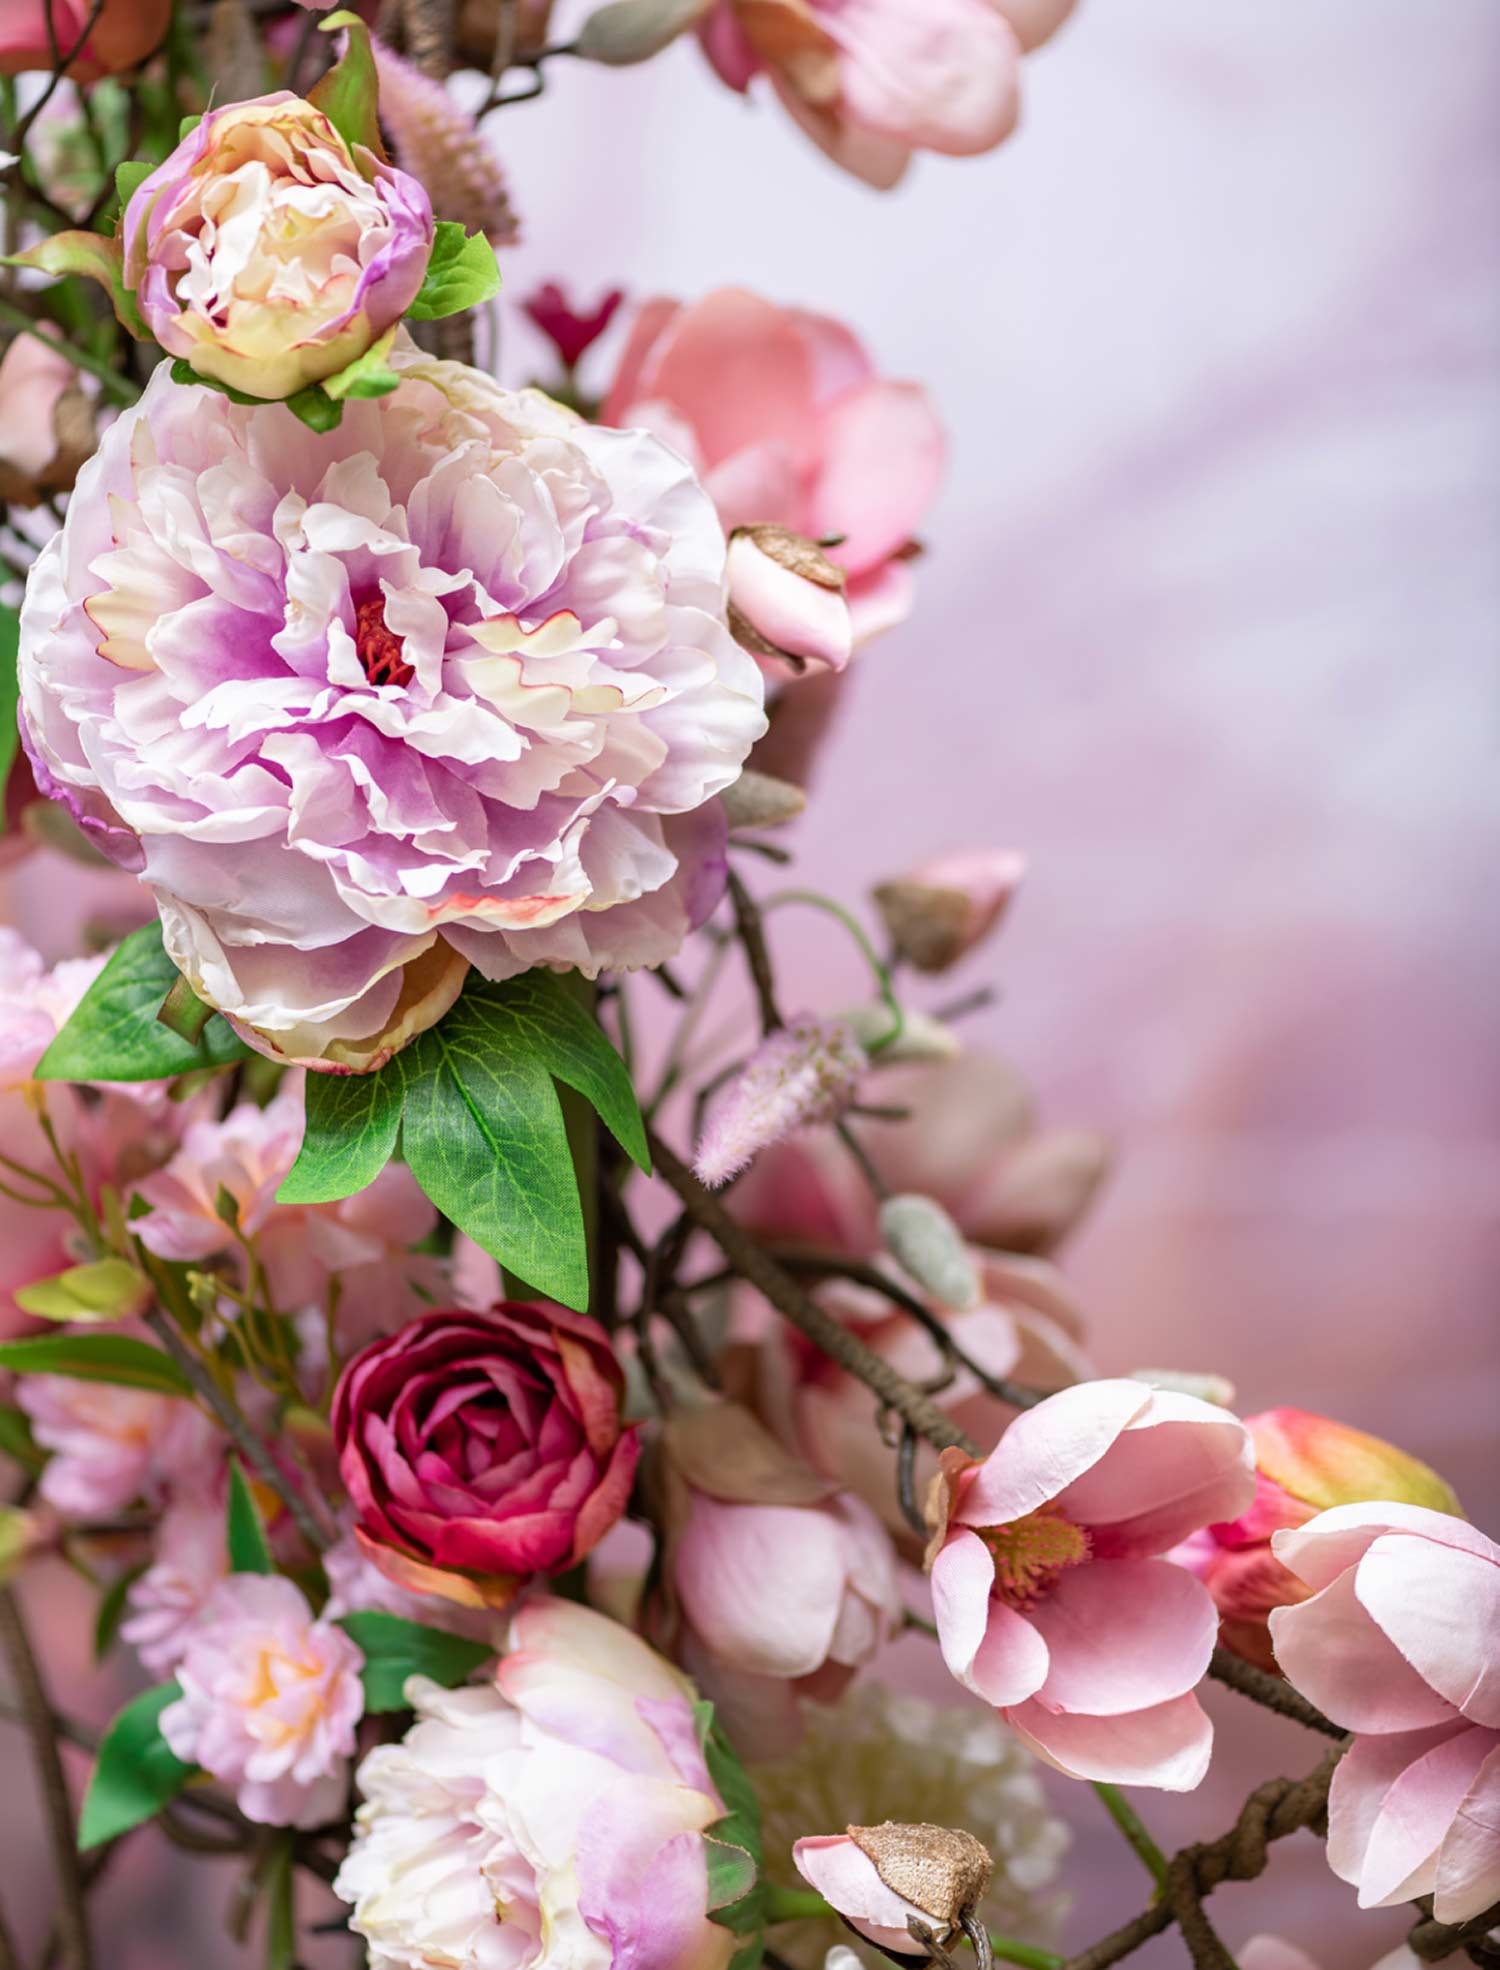 Mű bazsarózsa ág, halvány rózsaszín színű nyílt és bimbós virágfejekkel.